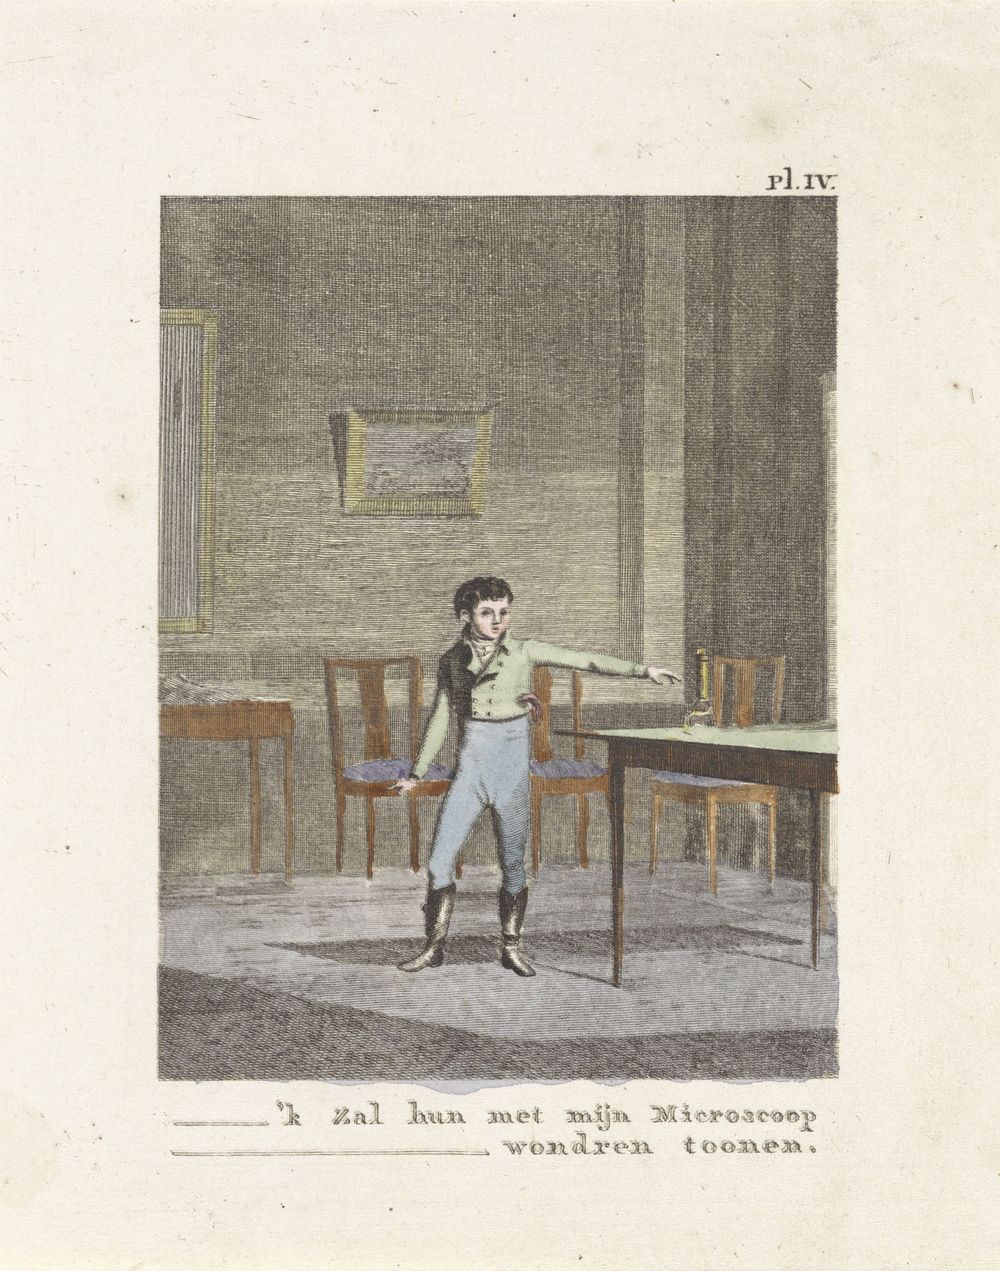 Jongen wijst naar een microscoop op een tafel (1806) by Izaak Jansz de Wit and Joannes Pieter Visser Bender